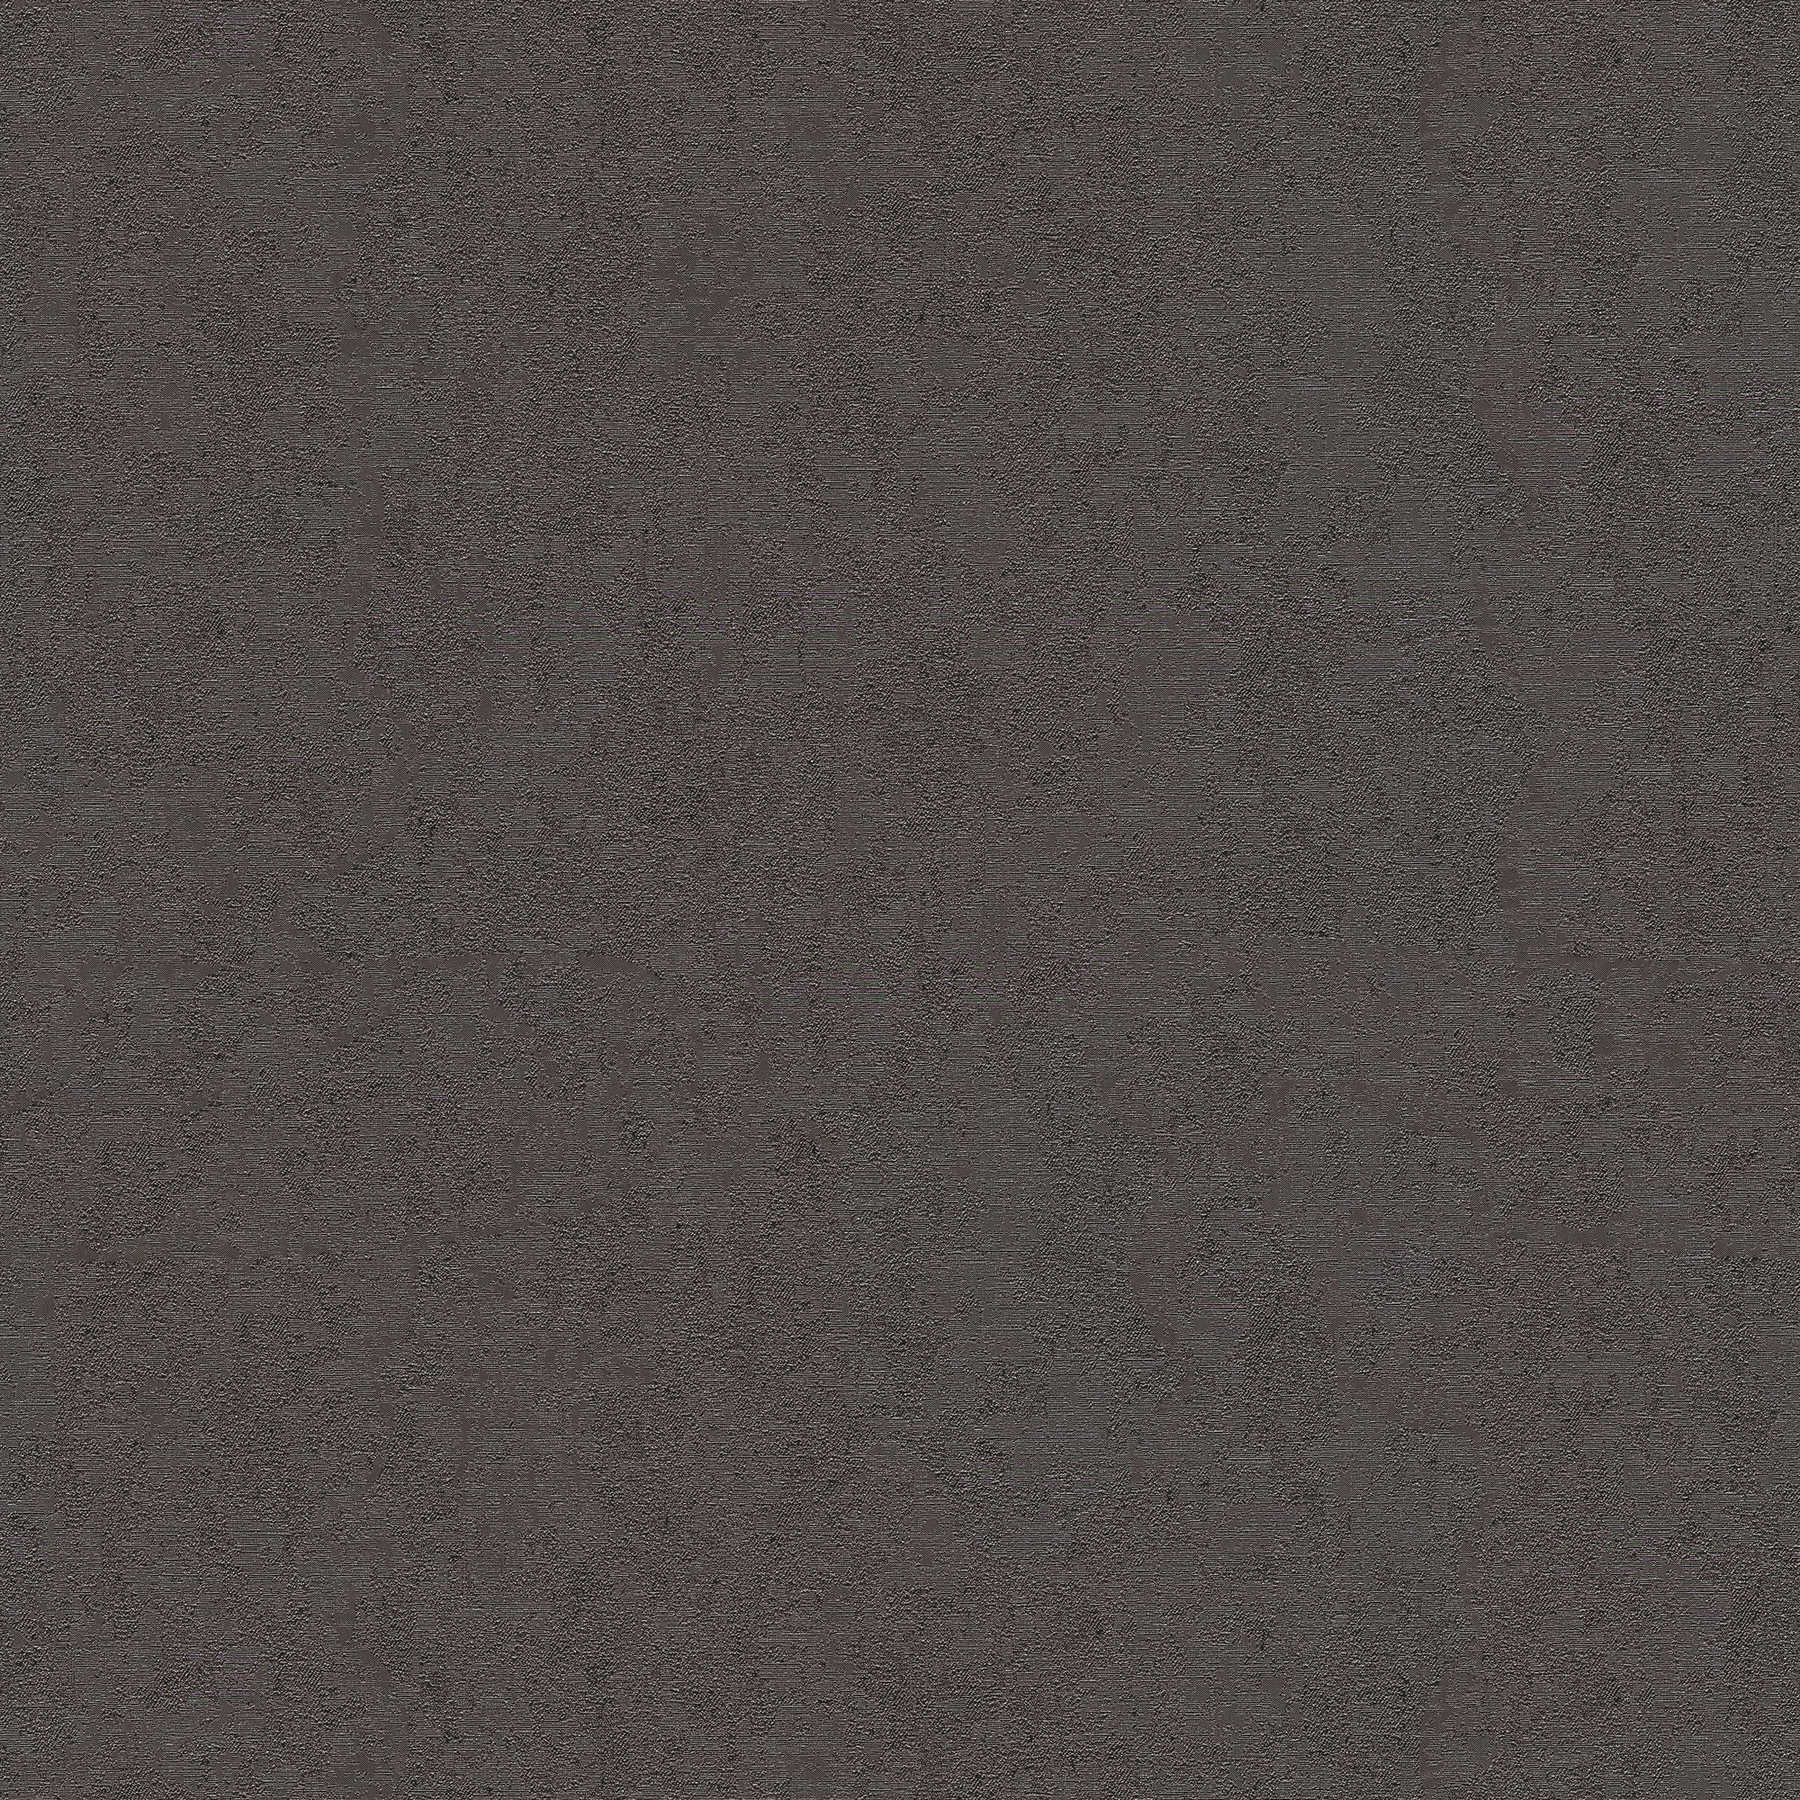 VERSACE Home Papier peint anthracite avec finition brillante spéciale - noir, gris
